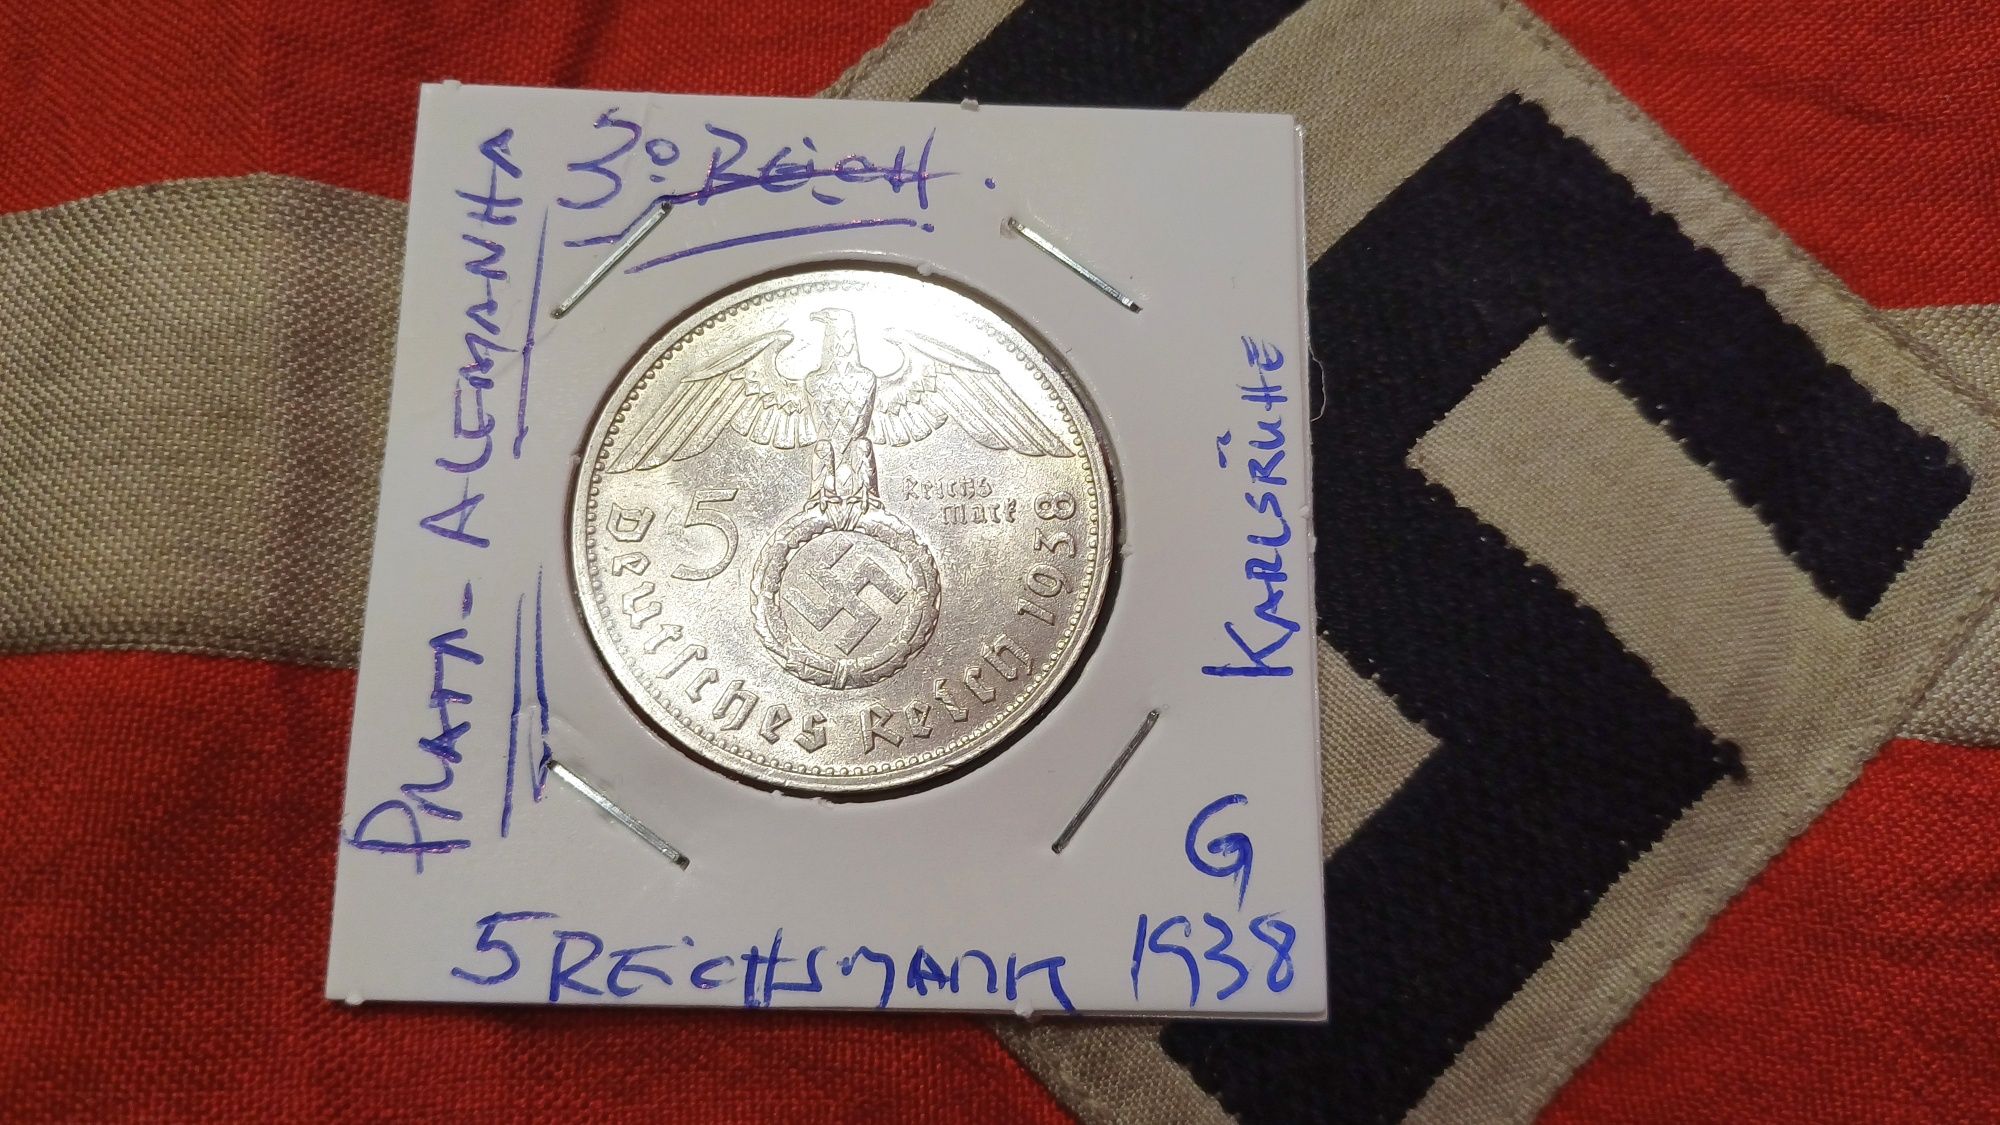 PROMOÇÃO--5 reichsmark PRATA 1938 G escassa Alemanha nazi-suástica